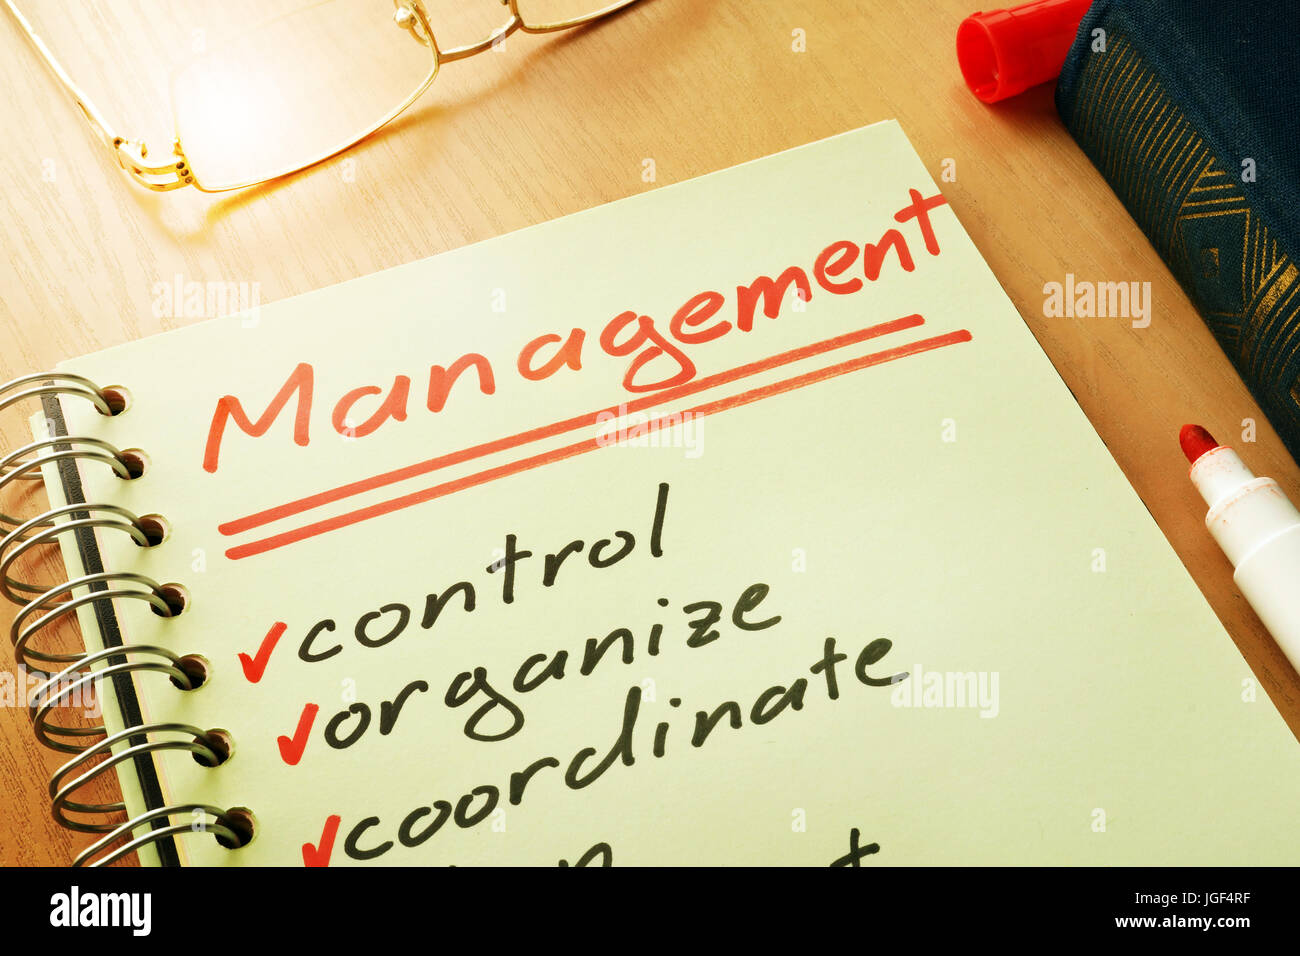 Wort-Management mit Listensteuerelement, organisieren, koordinieren. Stockfoto